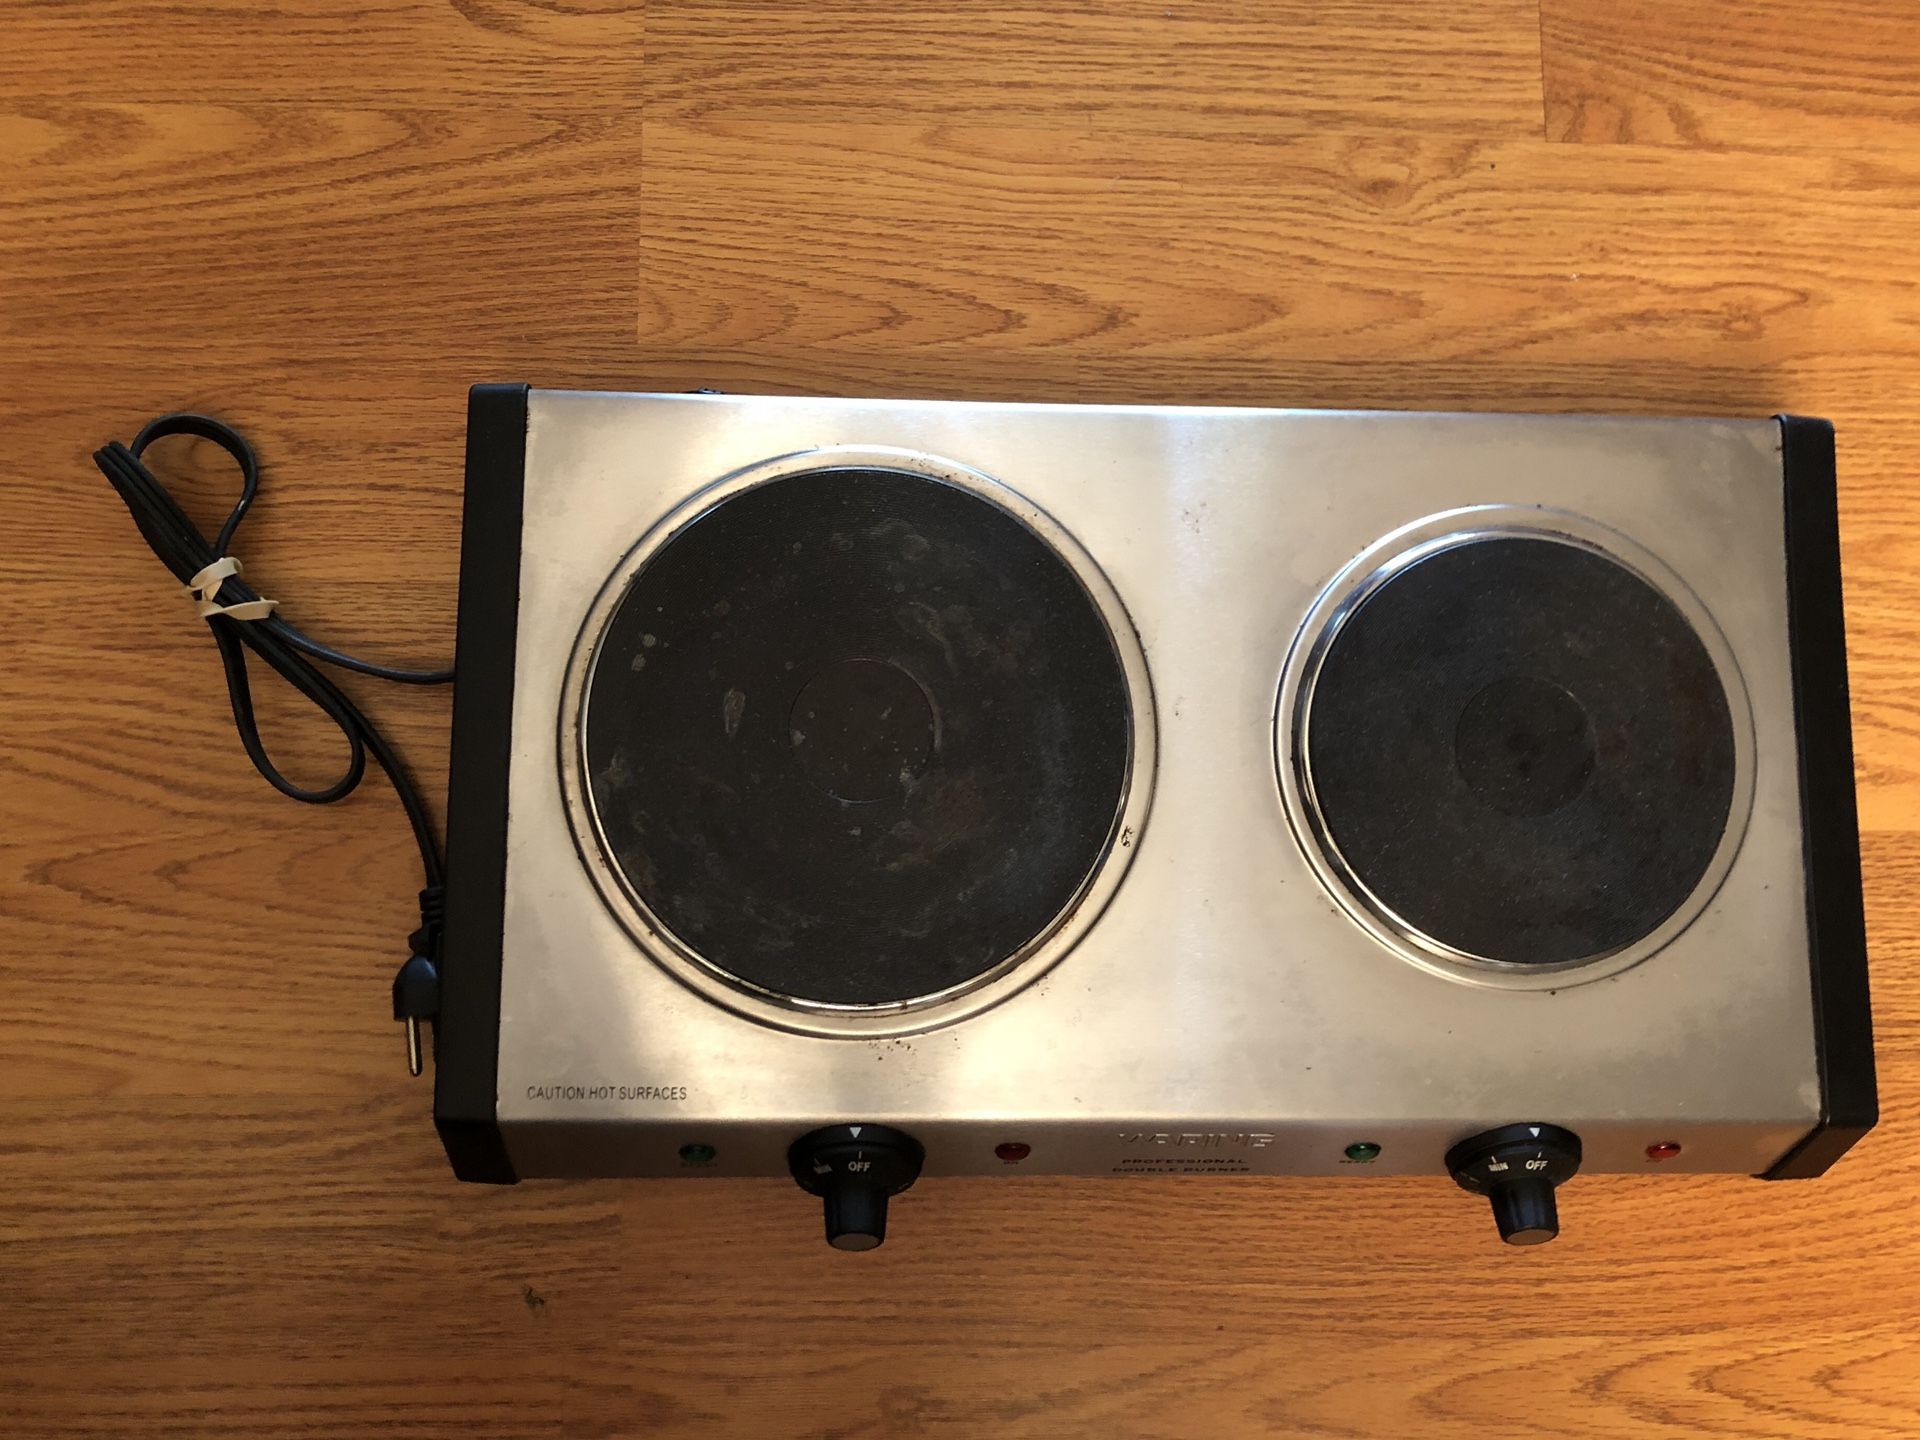 Waring cooktop double burner $50